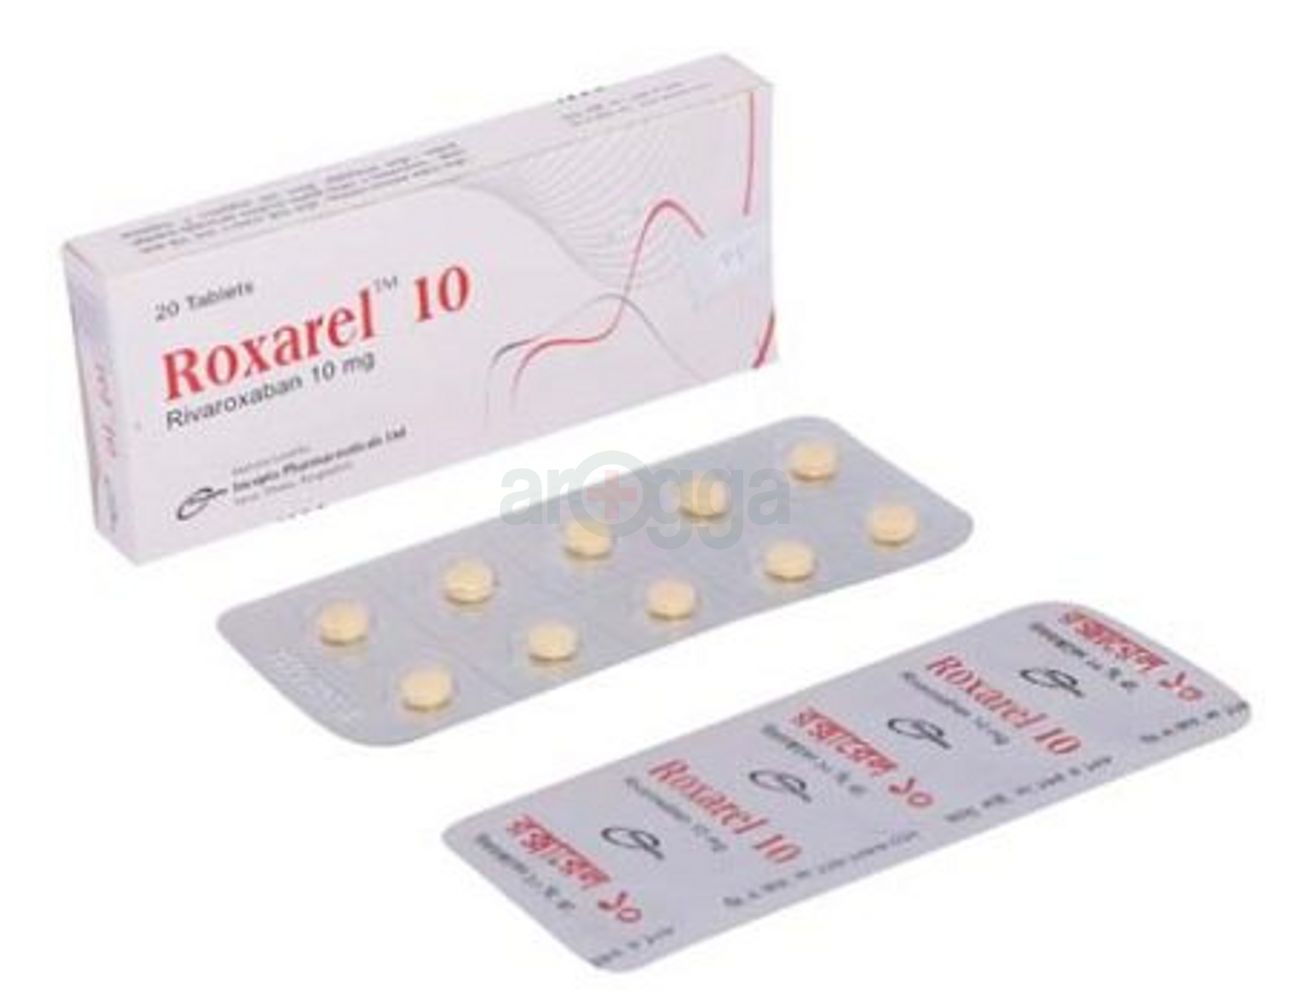 Roxarel 10